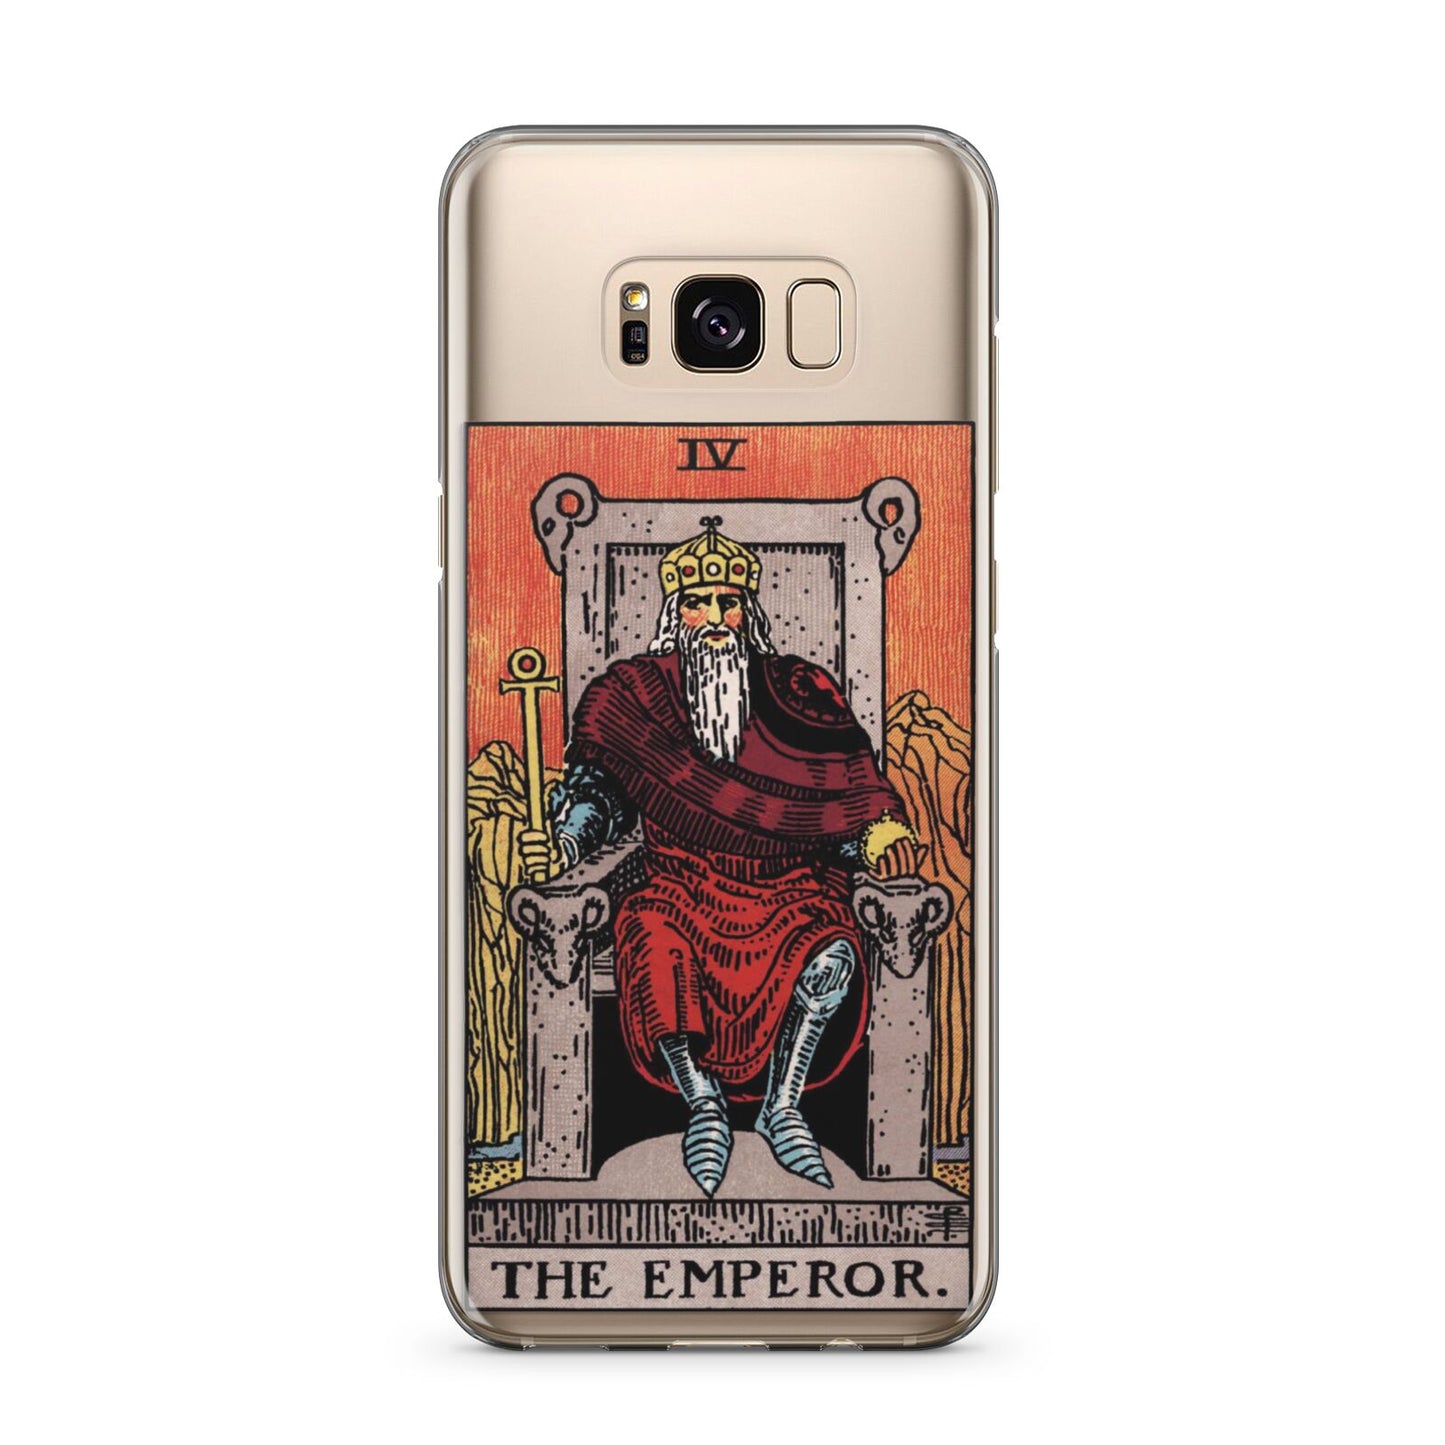 The Emperor Tarot Card Samsung Galaxy S8 Plus Case